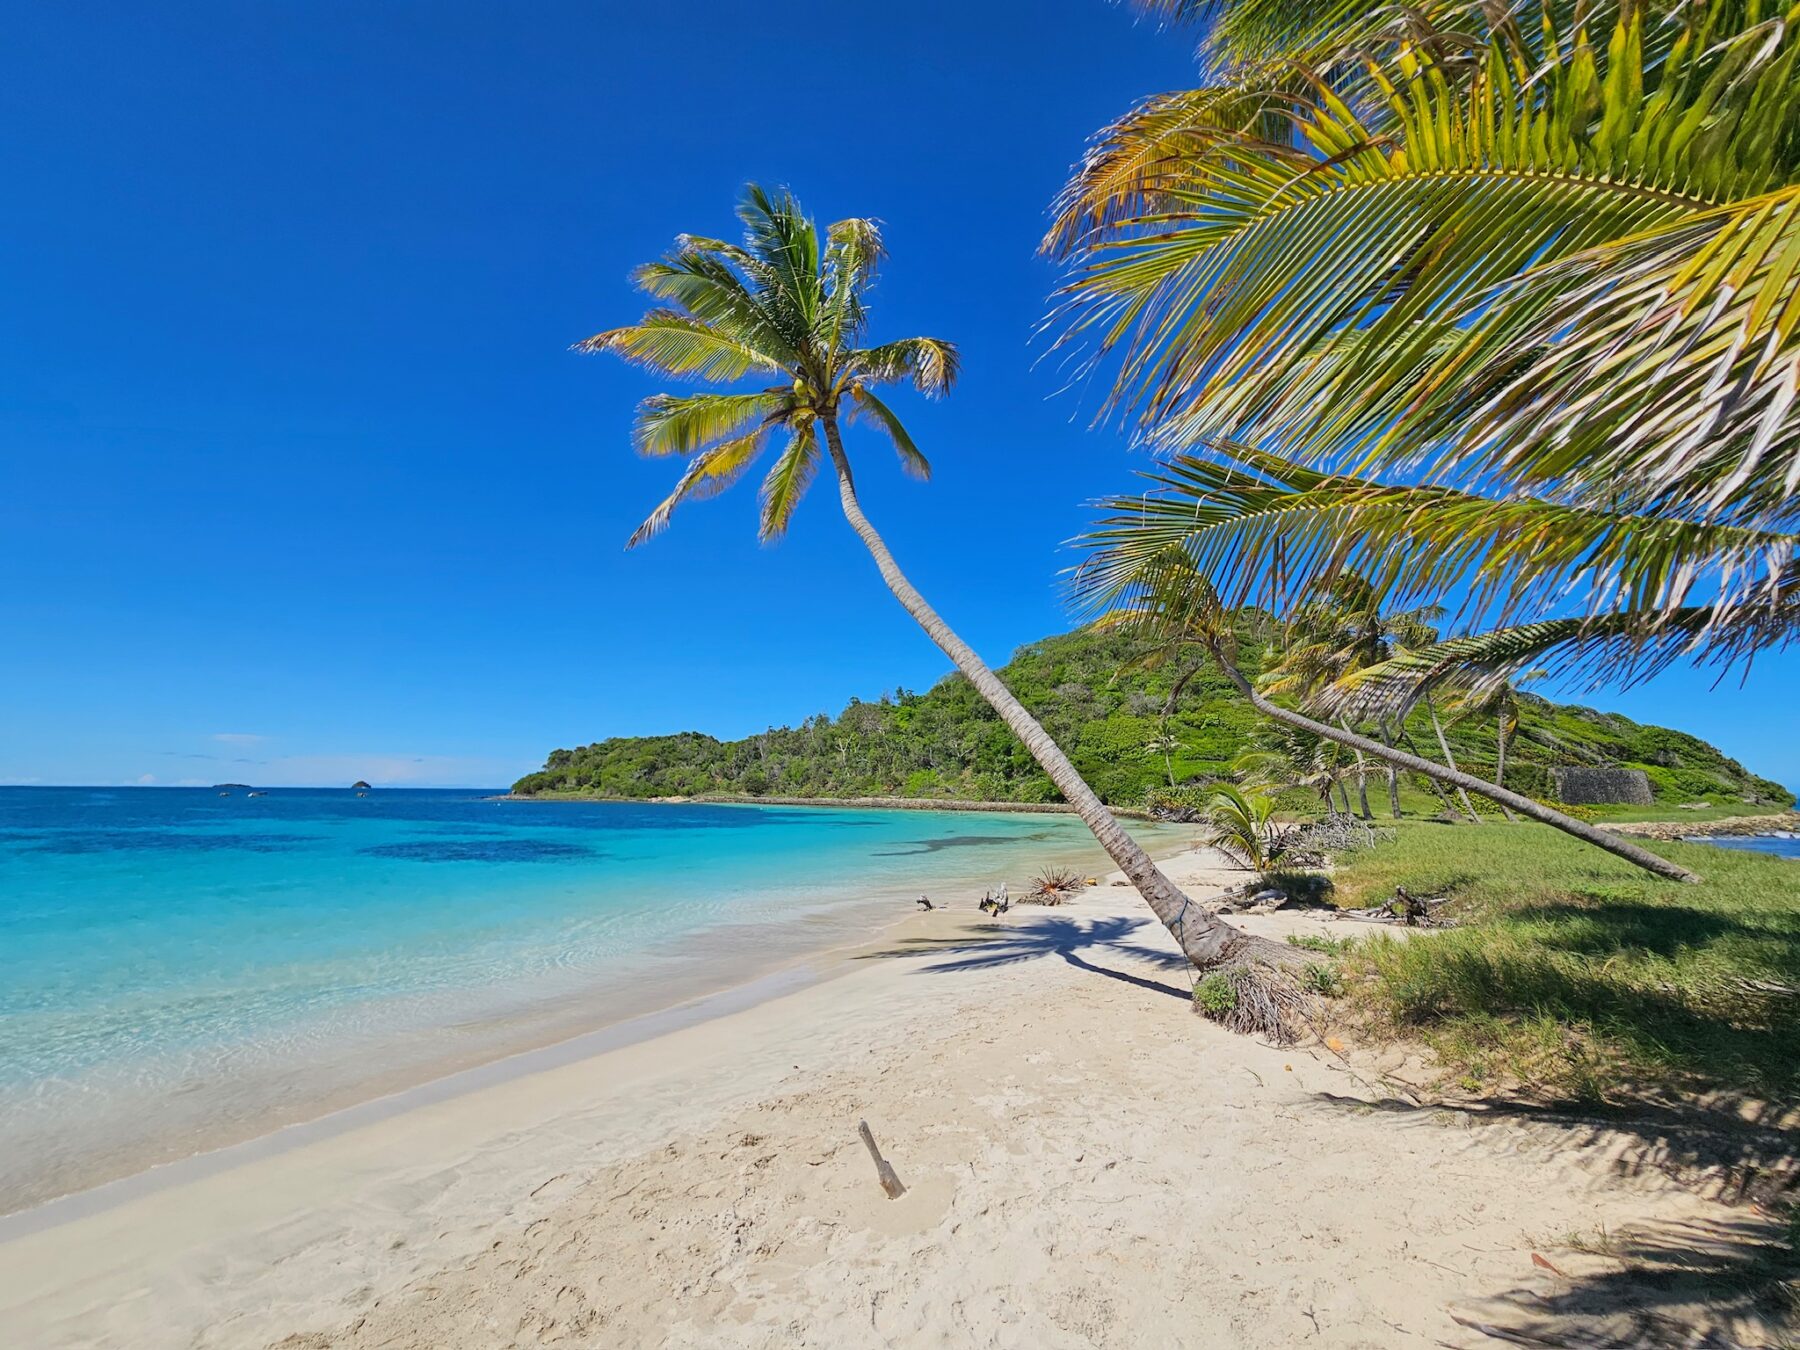 Tropischer Strand mit klarem blauem Wasser, weißem Sand und einer schiefen Palme unter einem strahlend blauen Himmel. Laub und kleine Felsen sind in der Nähe des Wasserrands zu sehen, wo ein Katamaran vor Anker liegt.